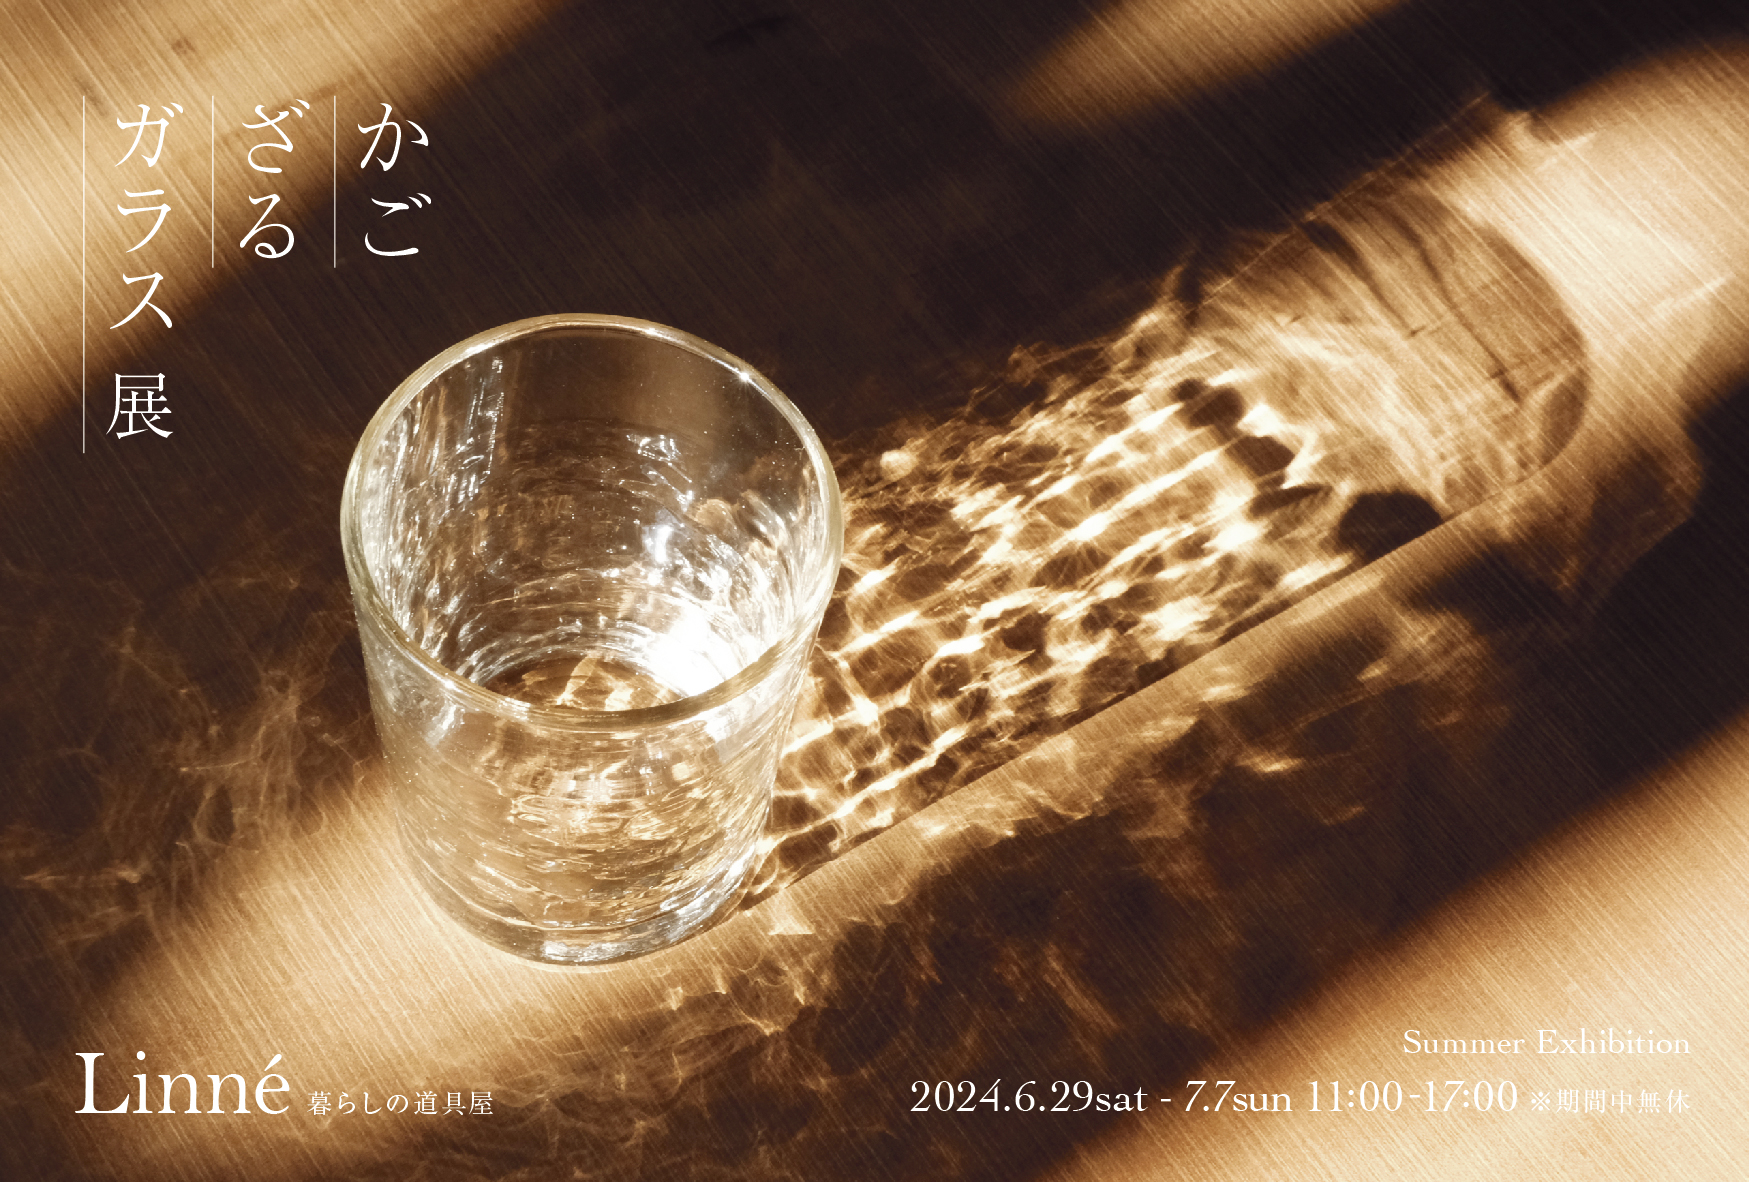 『かご ざる ガラス展』 6.29(sat)~7.7(sun) 開催